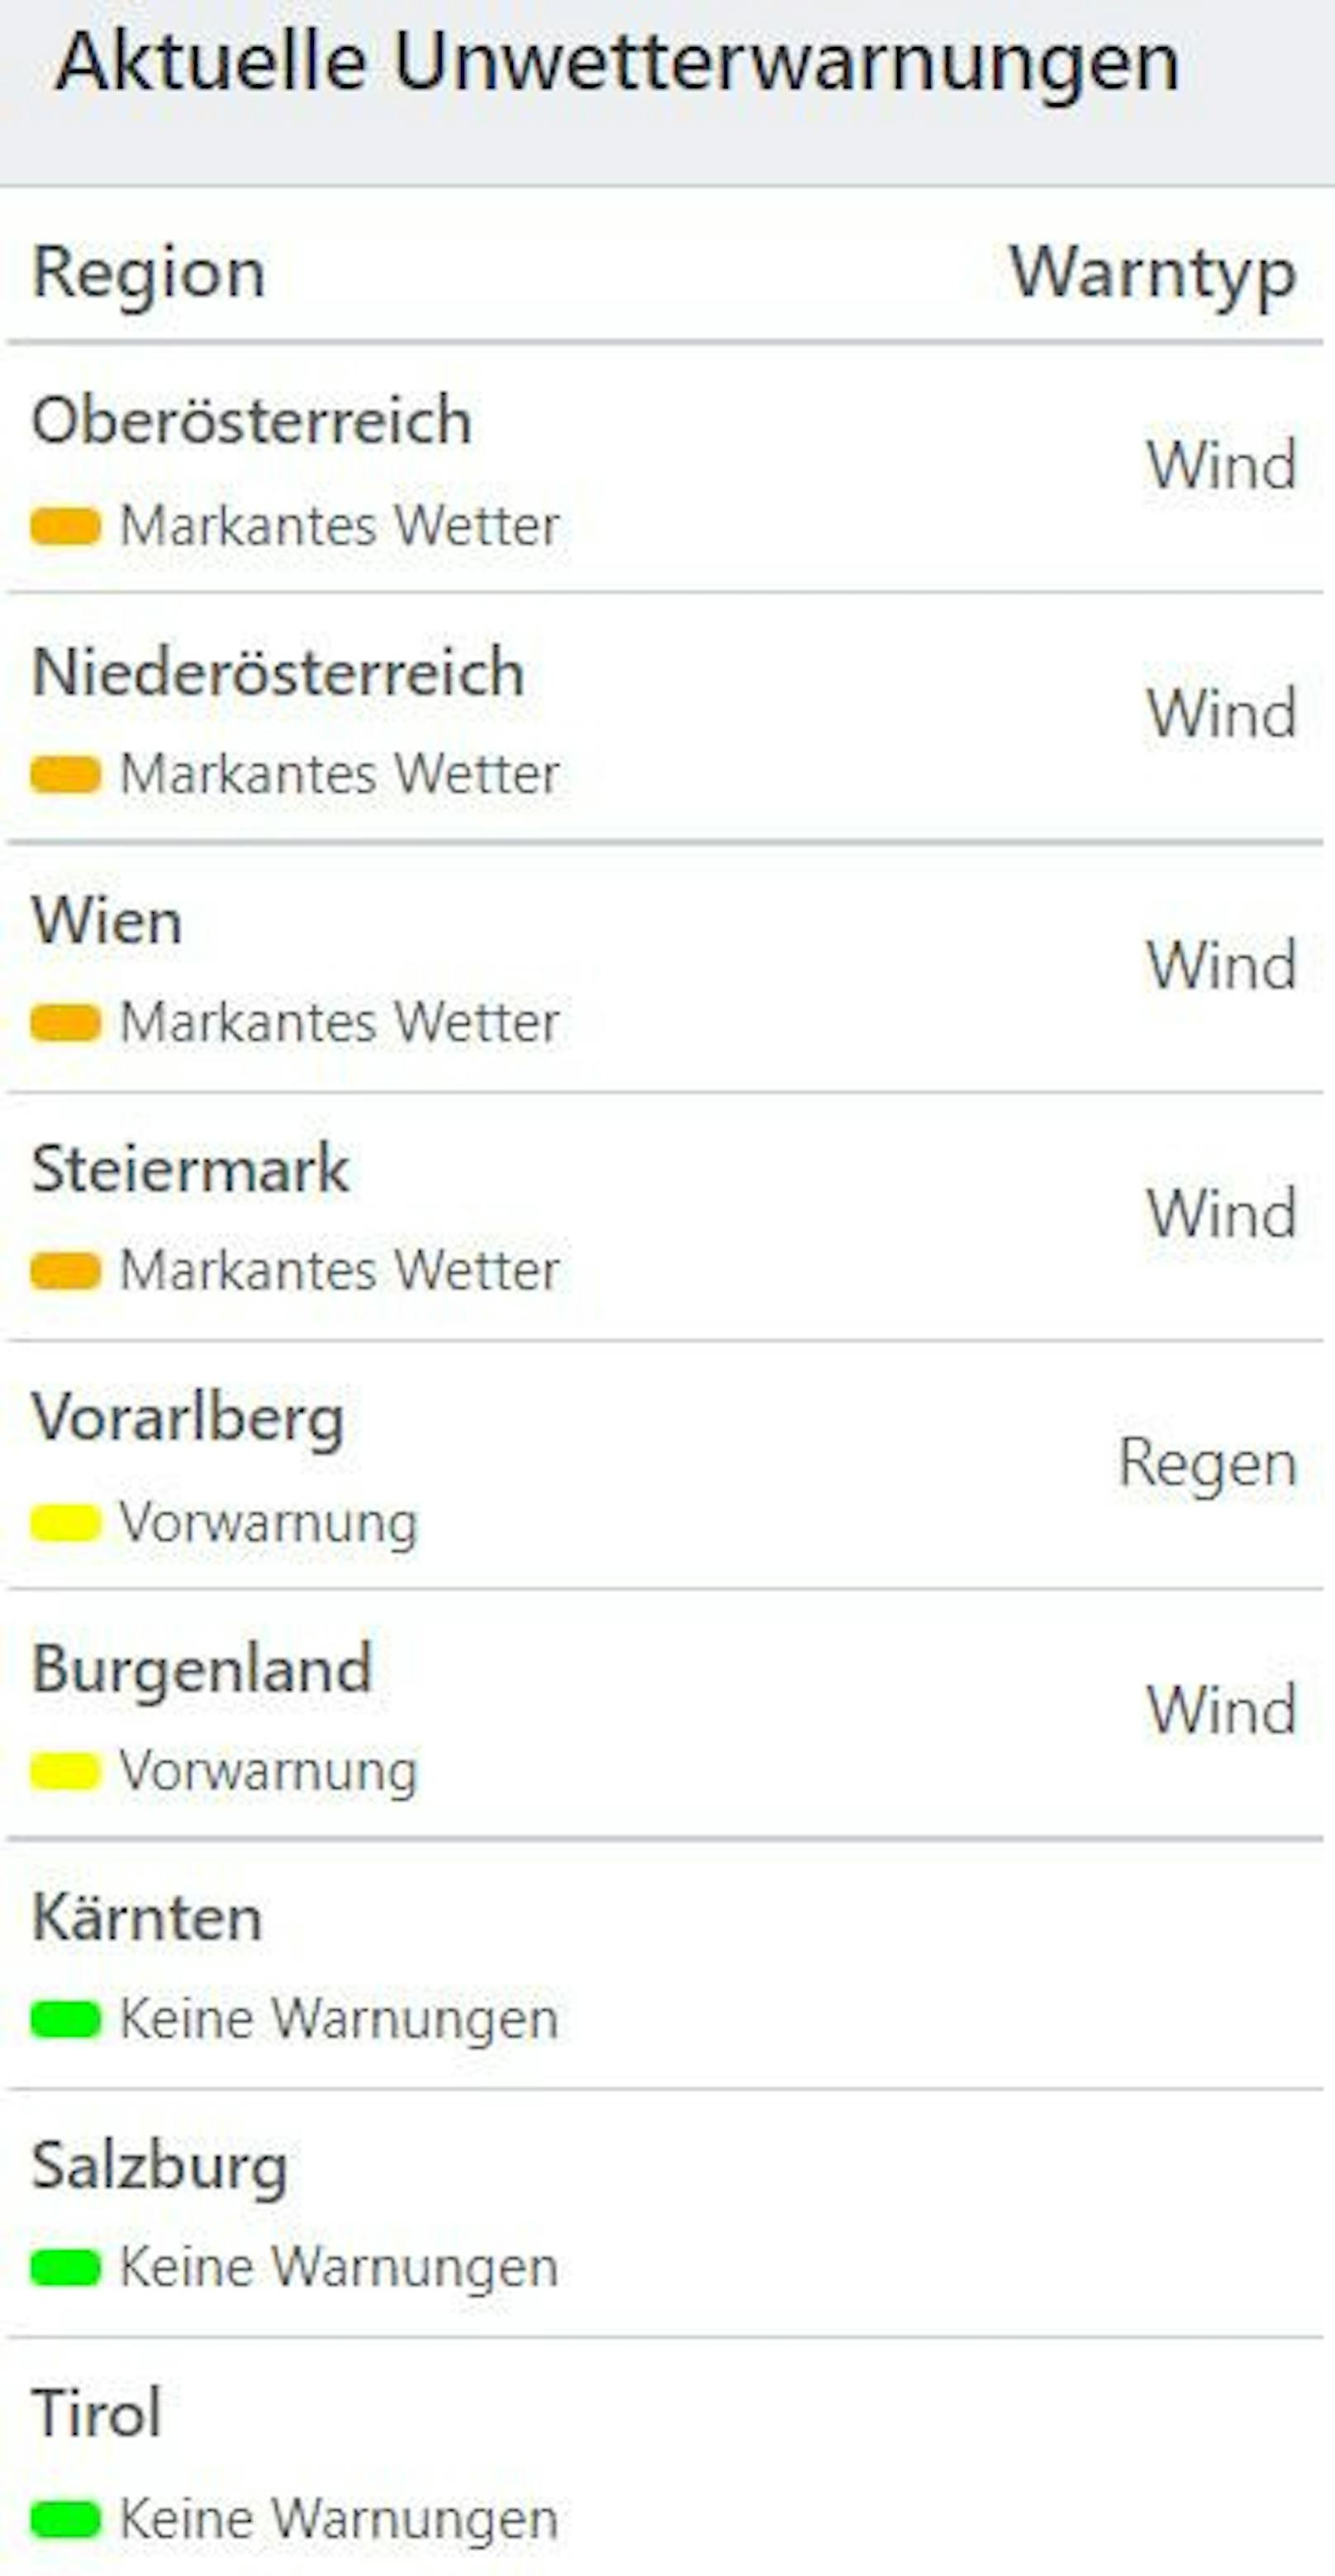 Aktuelle Unwetterwarnungen in Österreich